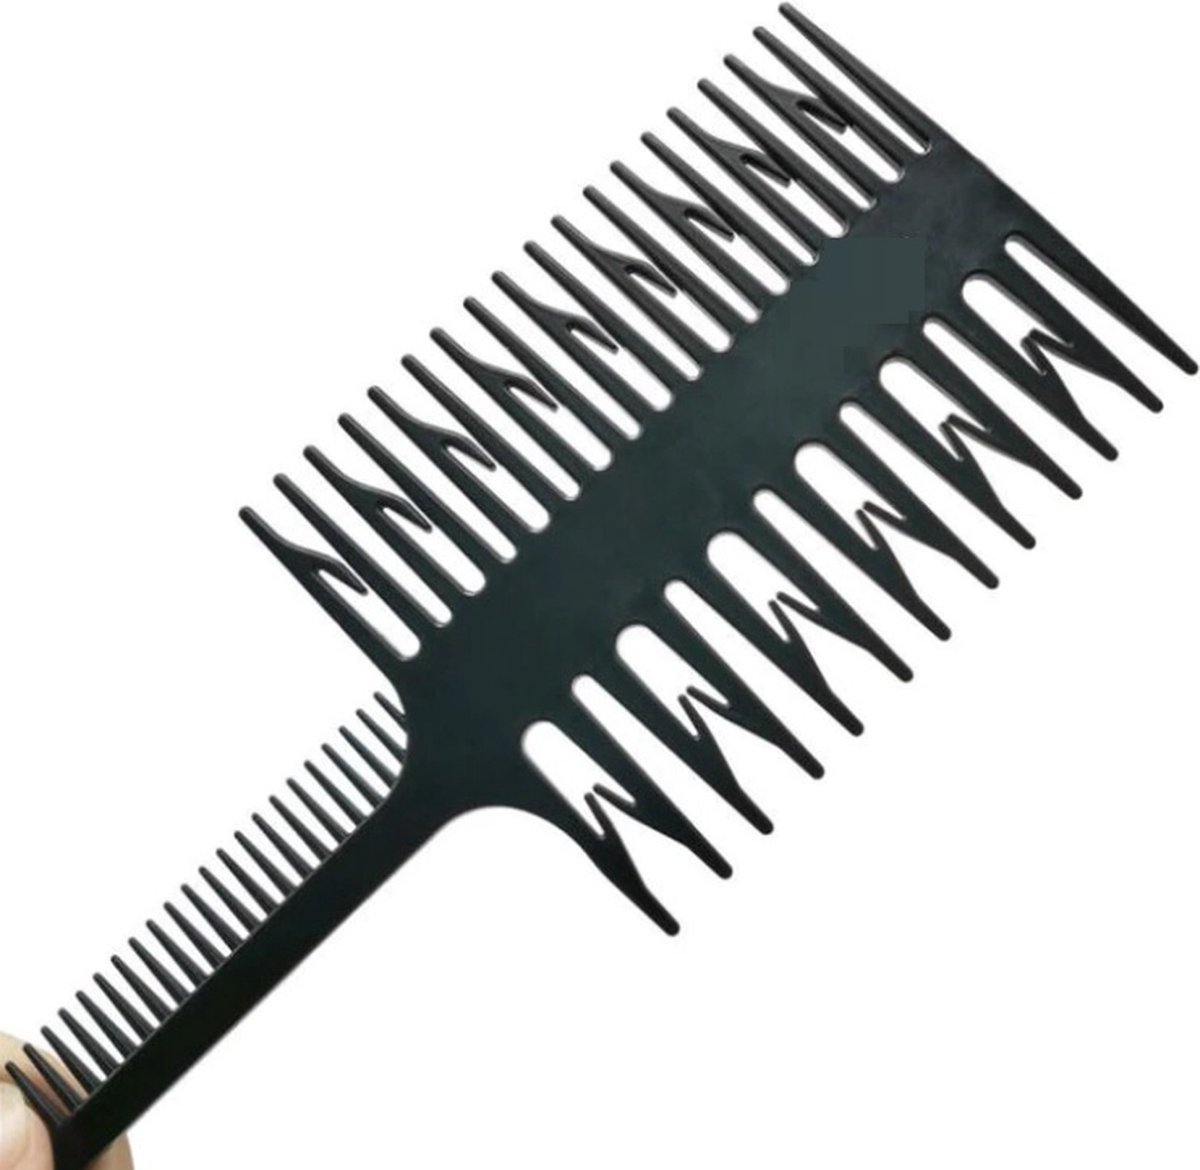 3in1 Texturizing Comb - Barbier Kam Hoog Kwaliteit - Texturizing Comb - Kapper Kam - Haar Kam - Haar Accessoire